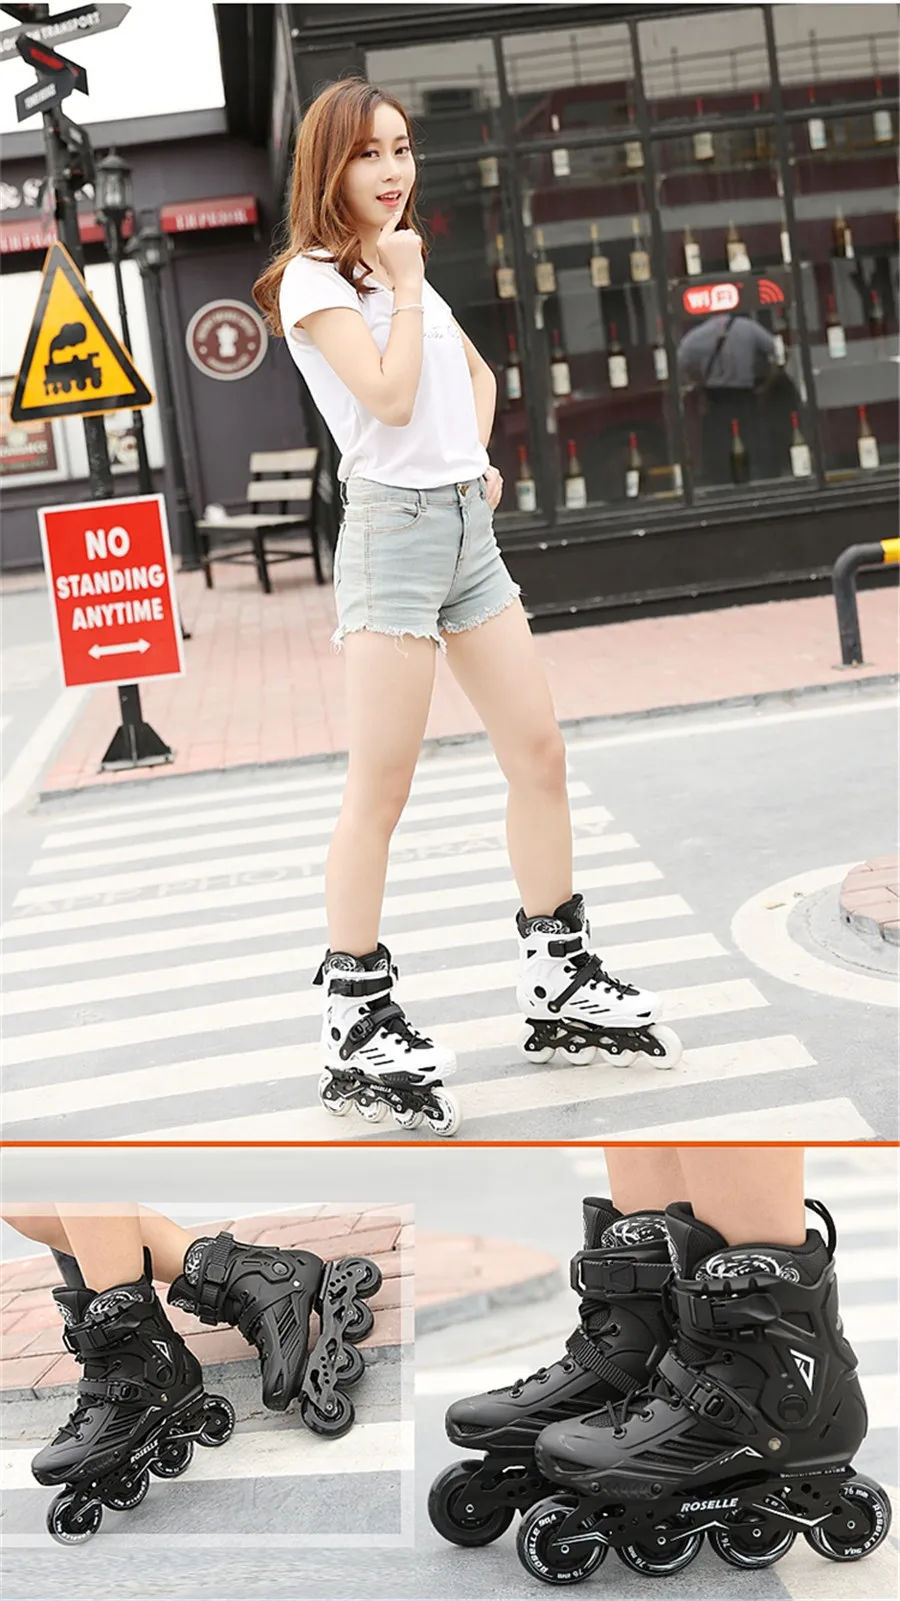 Роликовые коньки Professional взрослых Обувь для роликов, скейтборда 4*80 или 3*110 мм Сменные слалом скорость Patines Бесплатная катание гонки